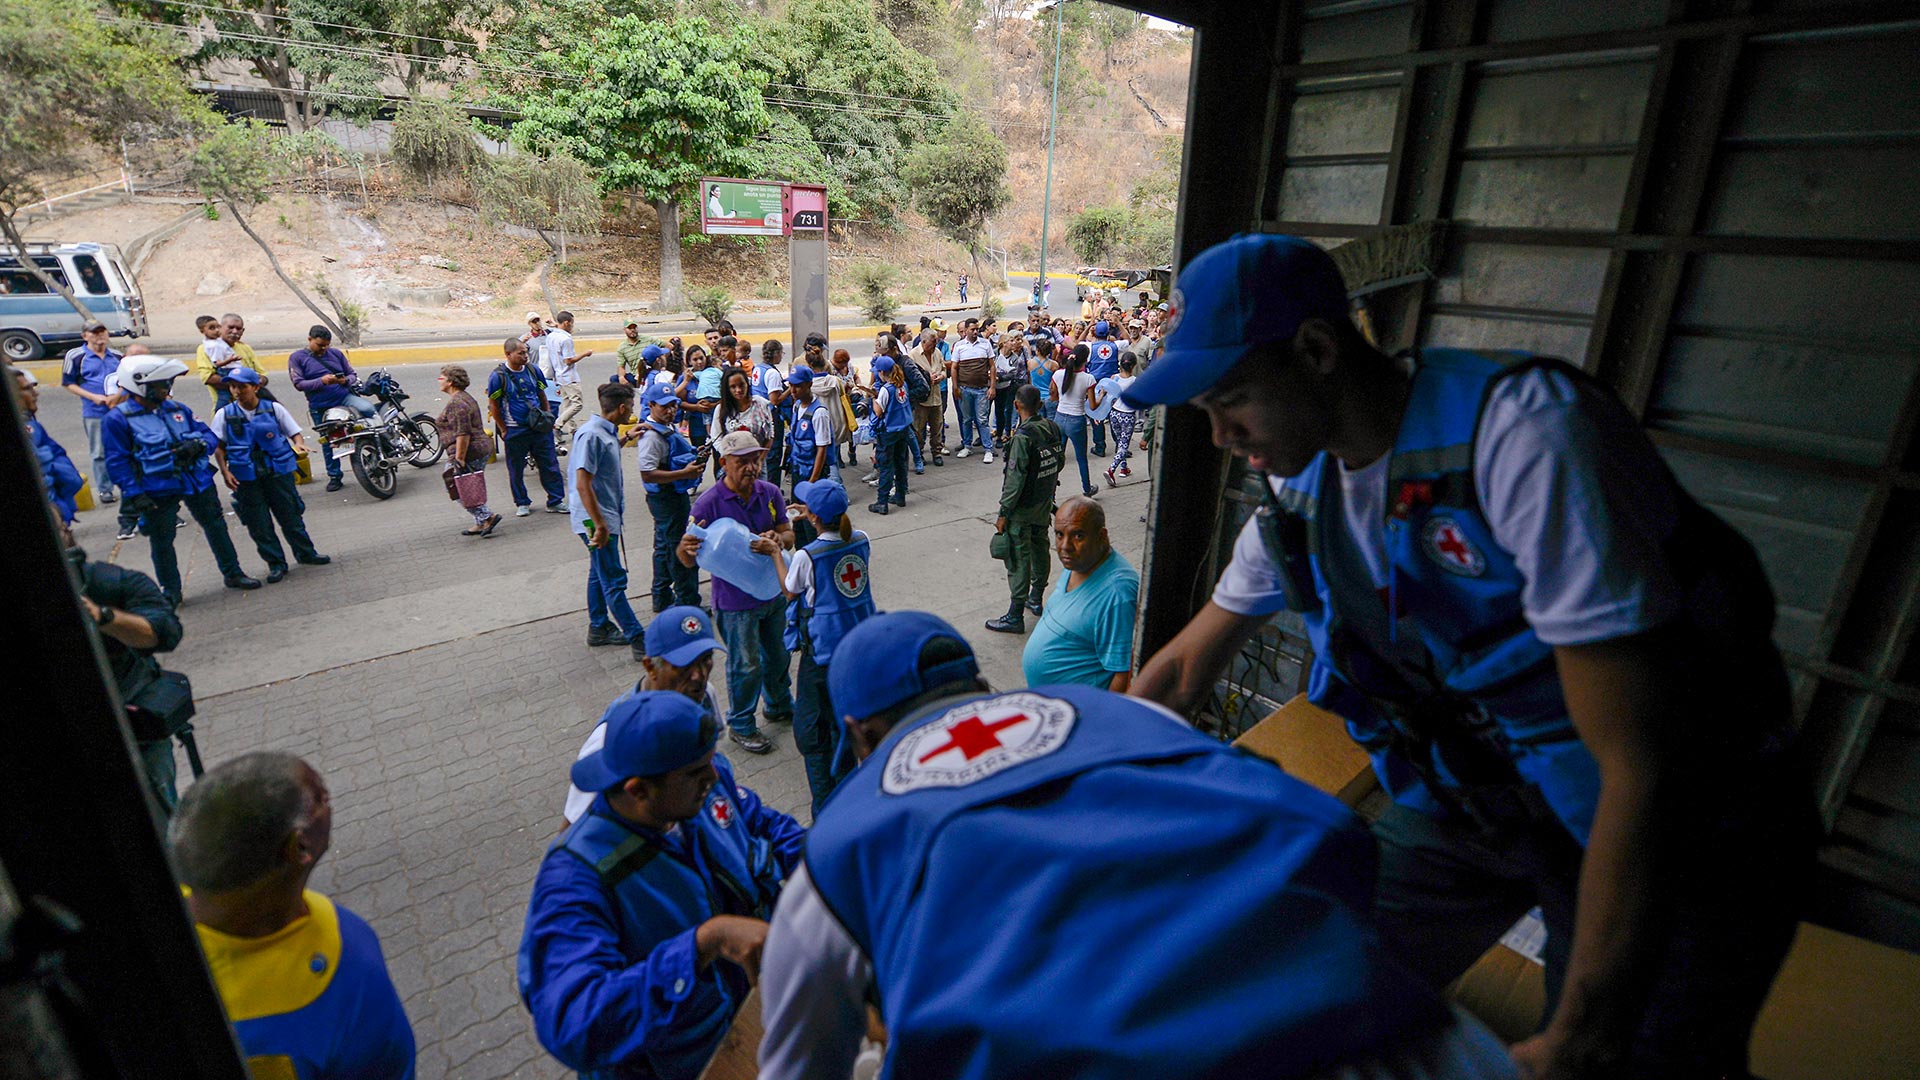 Cruz Roja: La ayuda humanitaria nunca debe usarse como una herramienta política